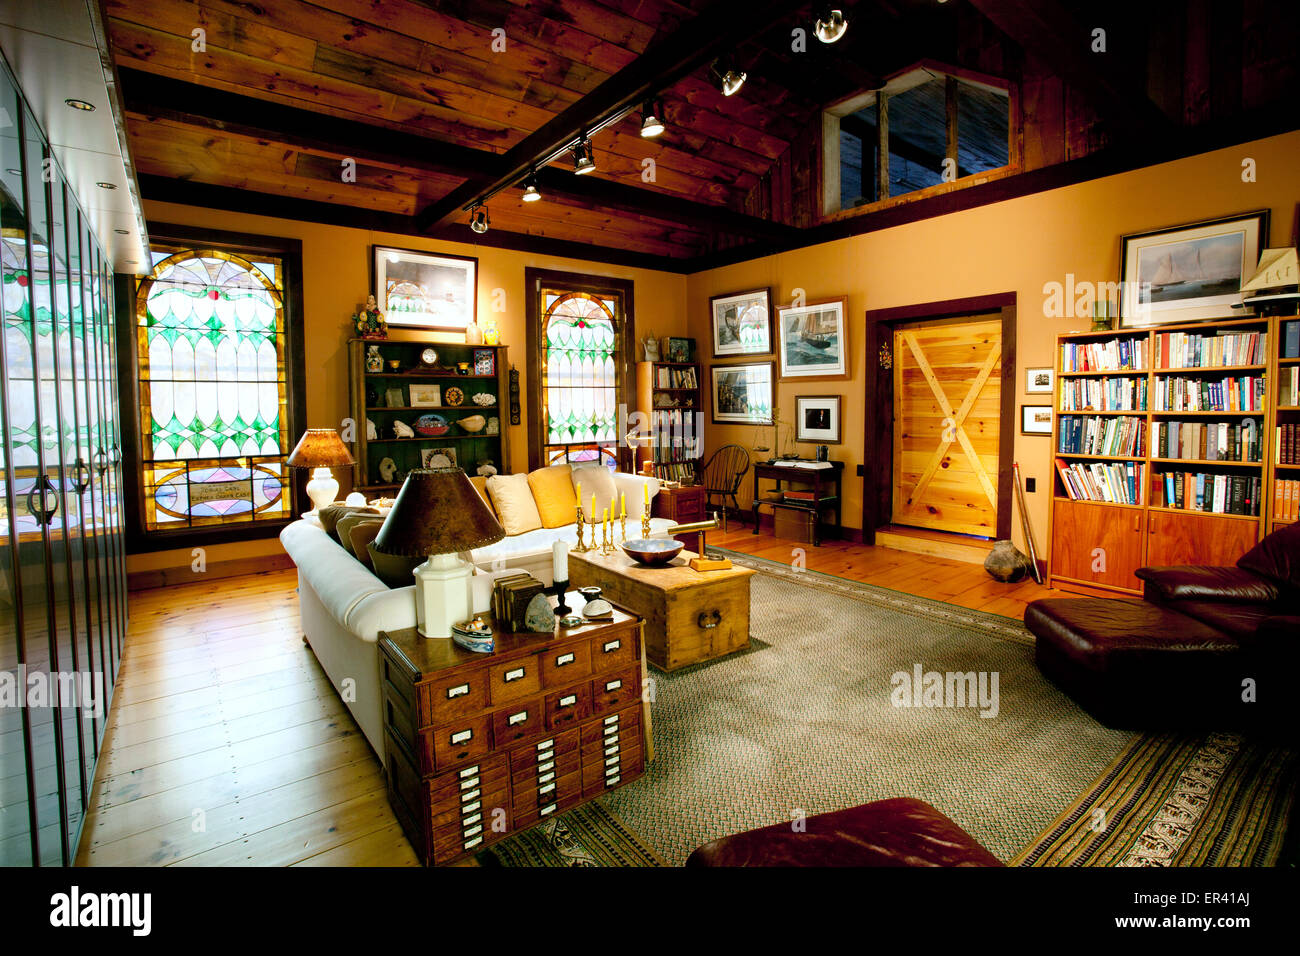 Dettagli interni del soggiorno. Caseificio del Vermont fienile ristrutturato in un unica casa con antichi le finestre di vetro macchiate. Foto Stock